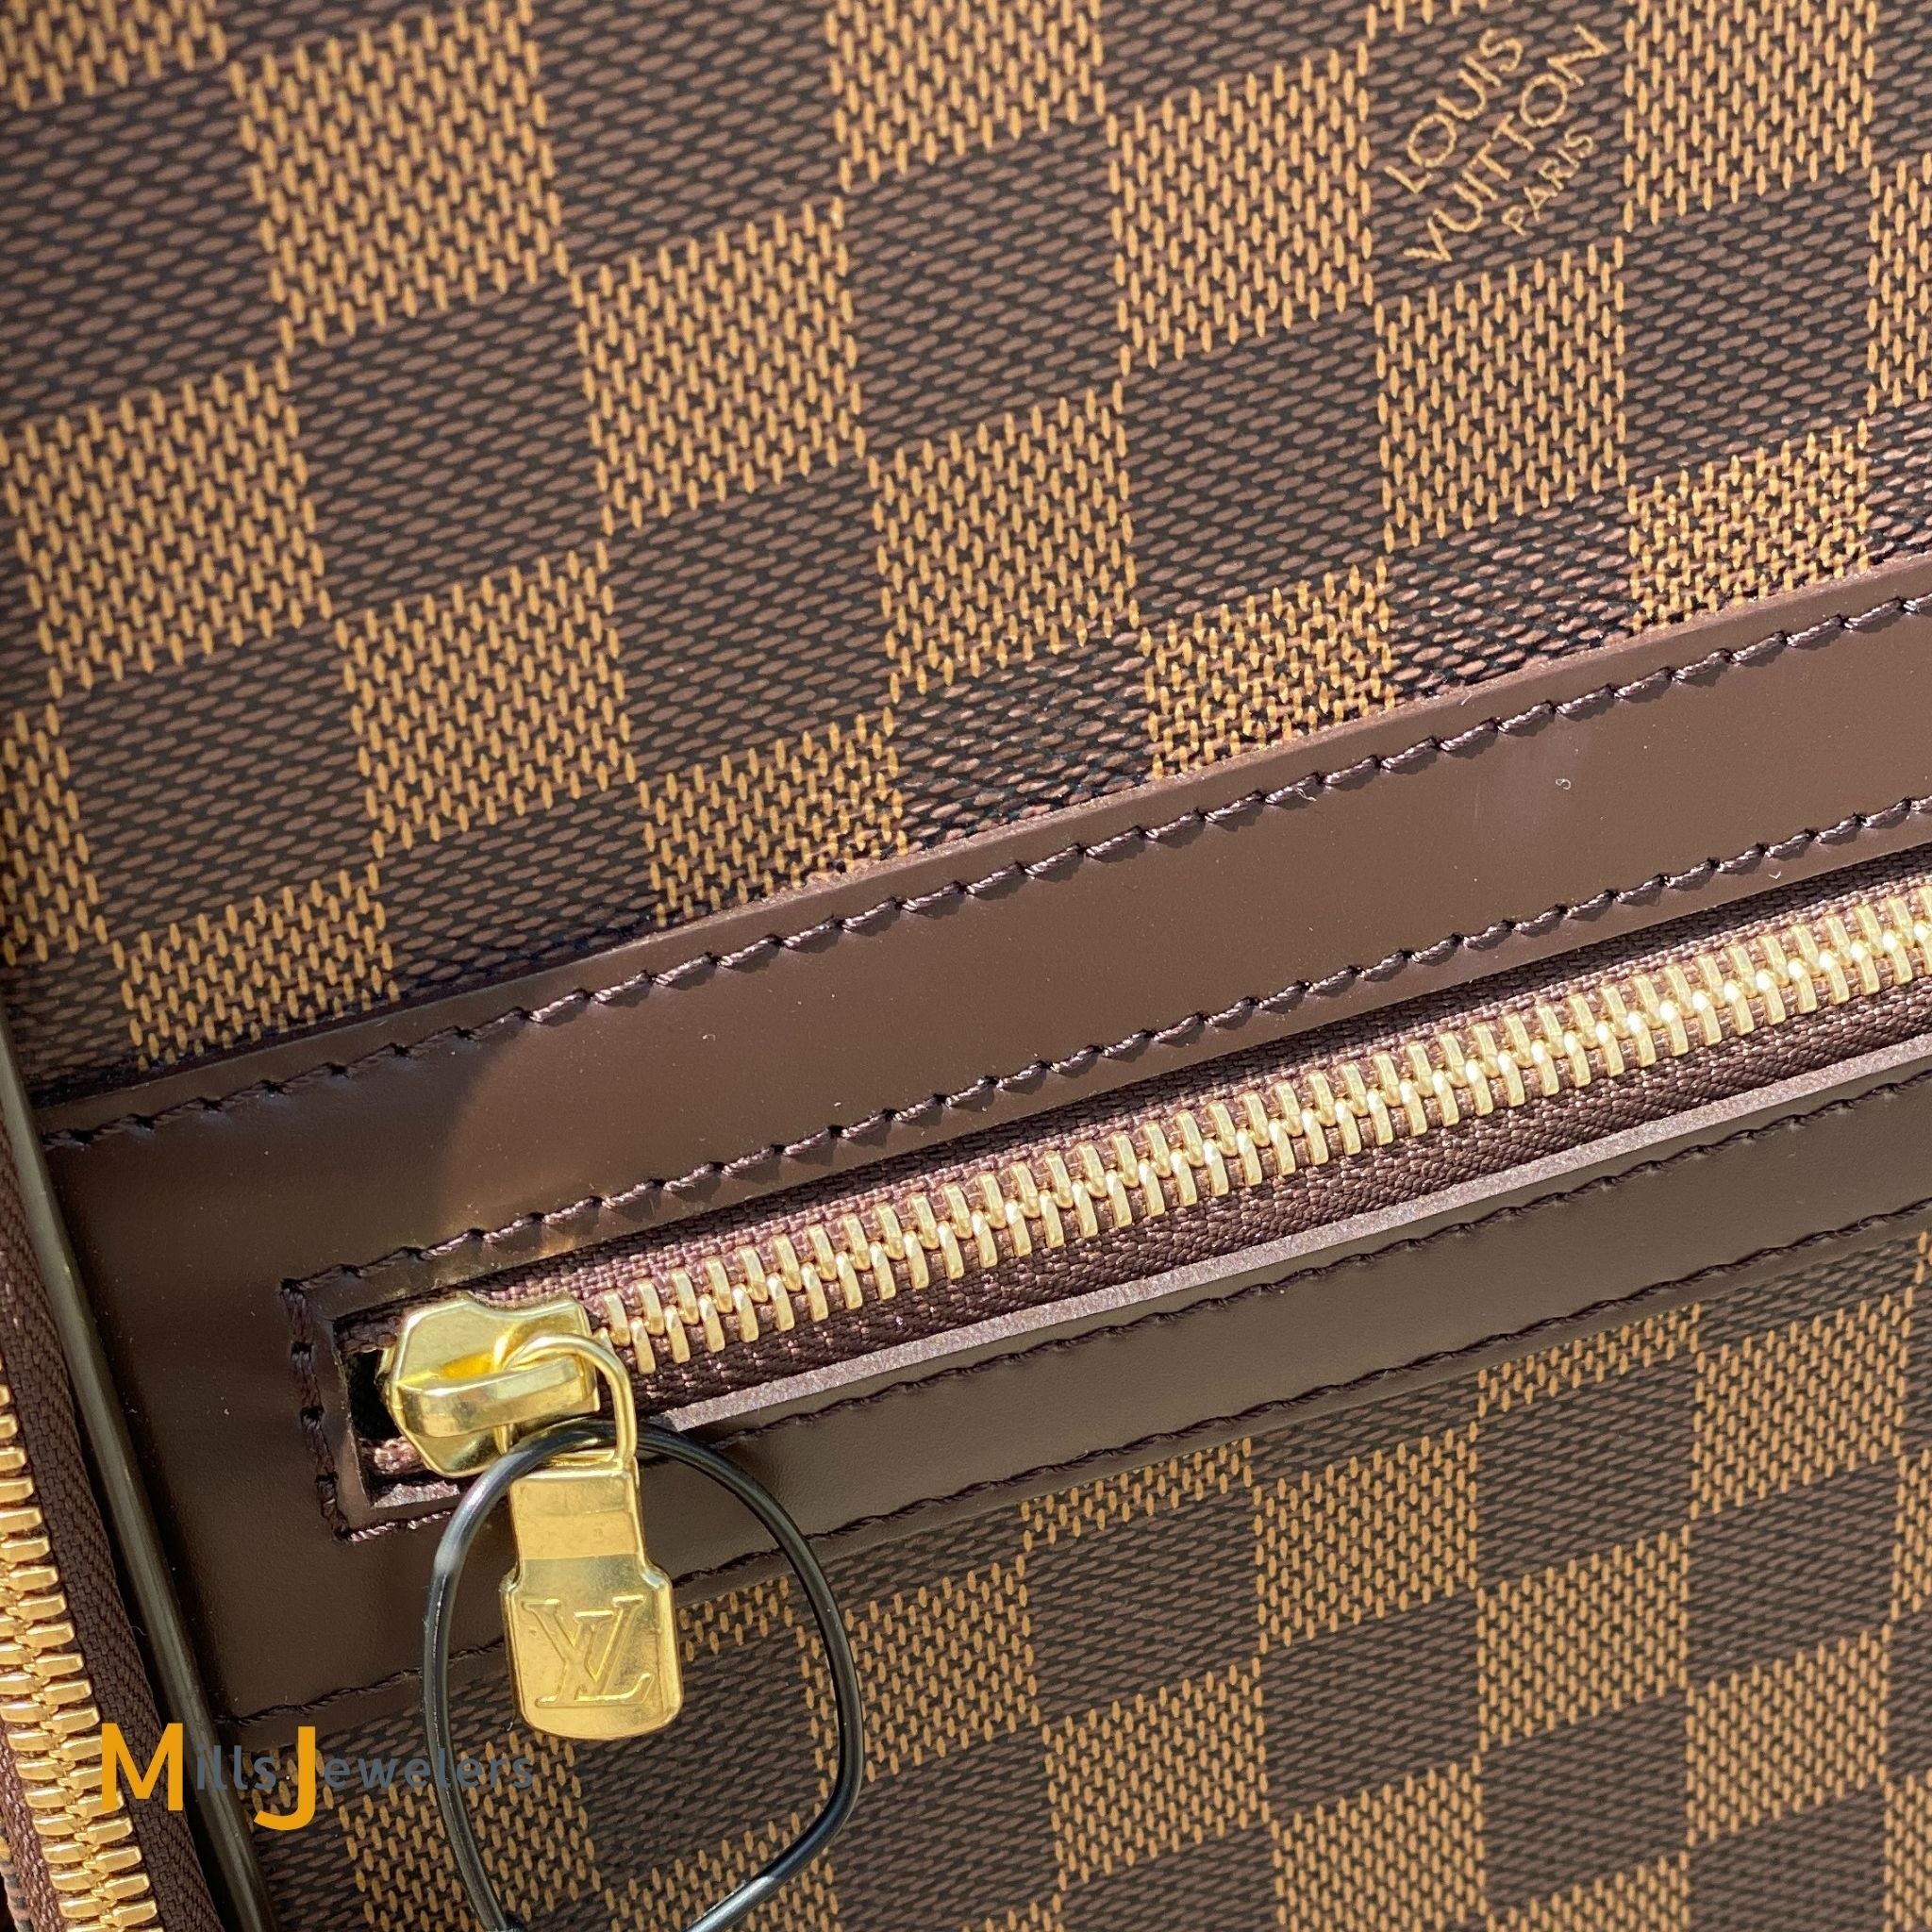 Pegase cloth travel bag Louis Vuitton Brown in Cloth - 26826826